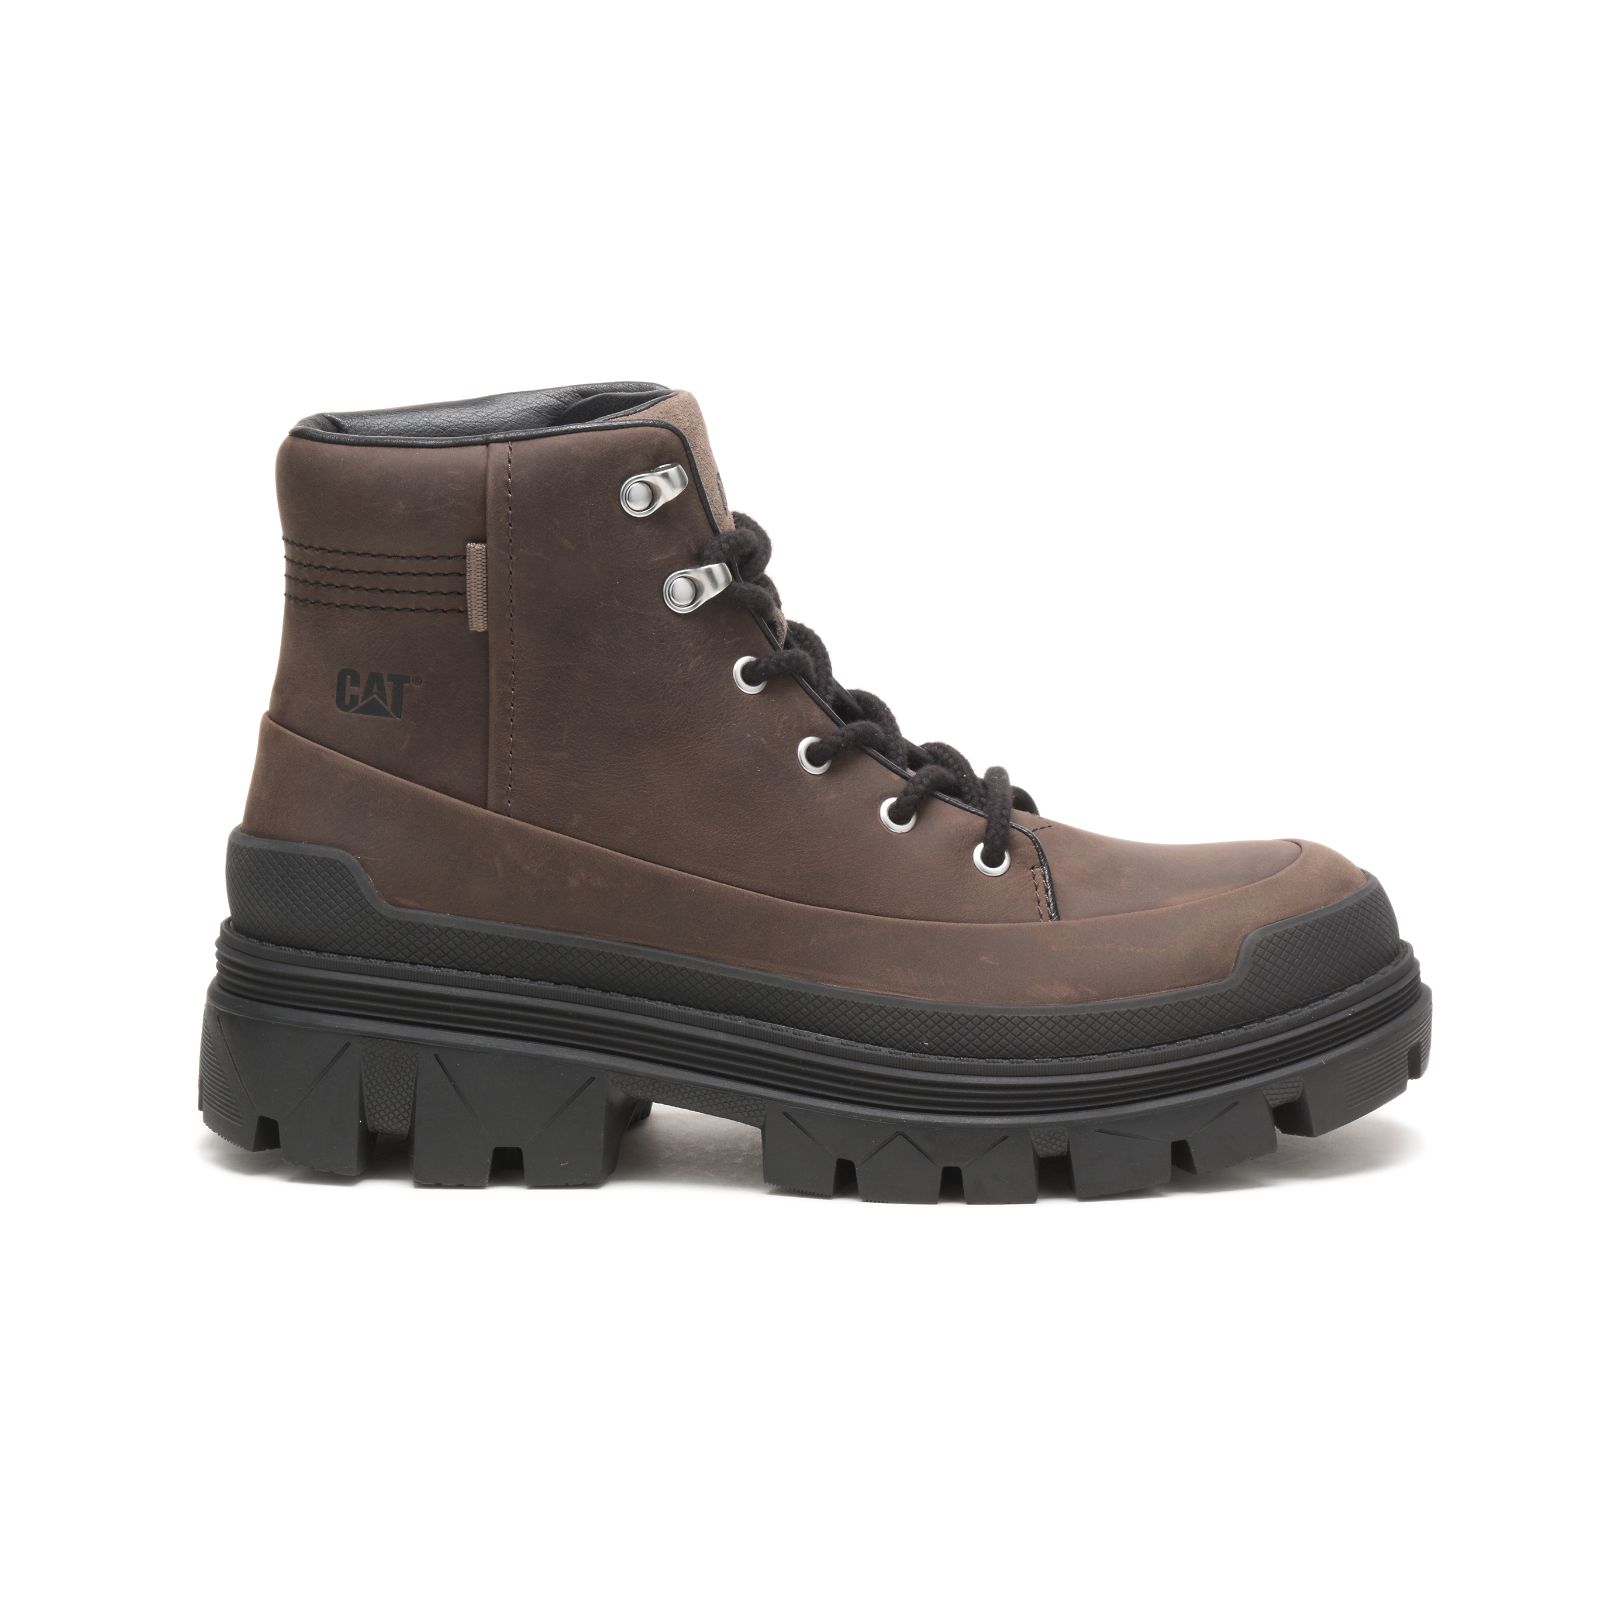 Caterpillar Hardware - Womens Casual Boots - Brown - NZ (820CBJENZ)